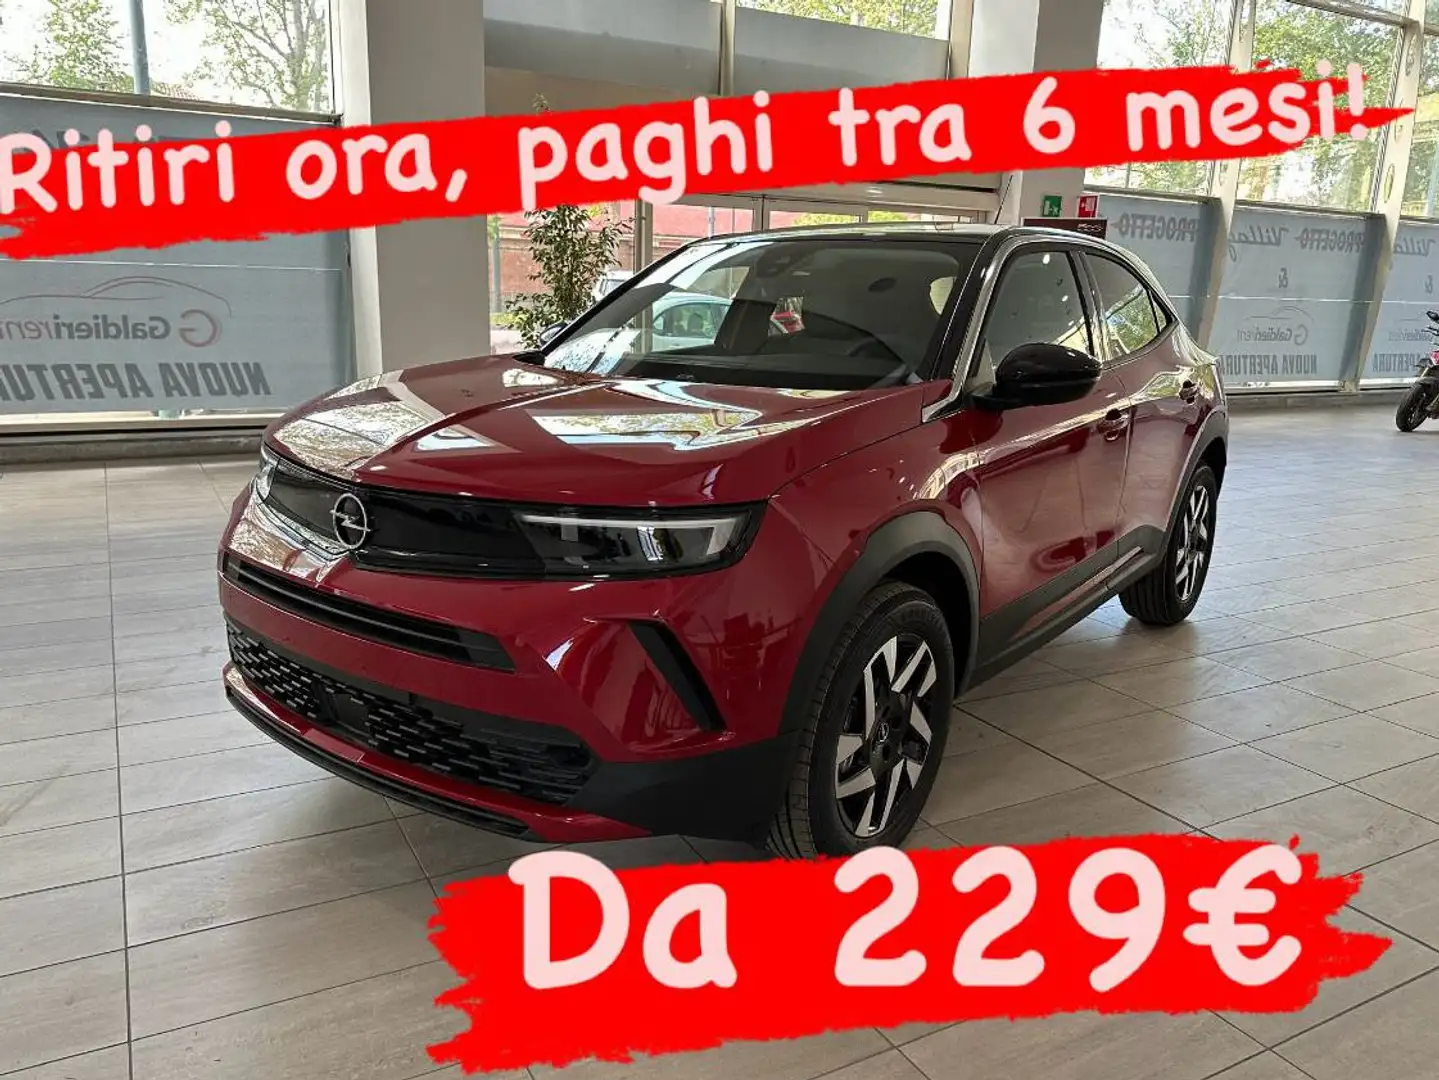 Opel Mokka DA 229€ TRA 6 MESI! Červená - 1